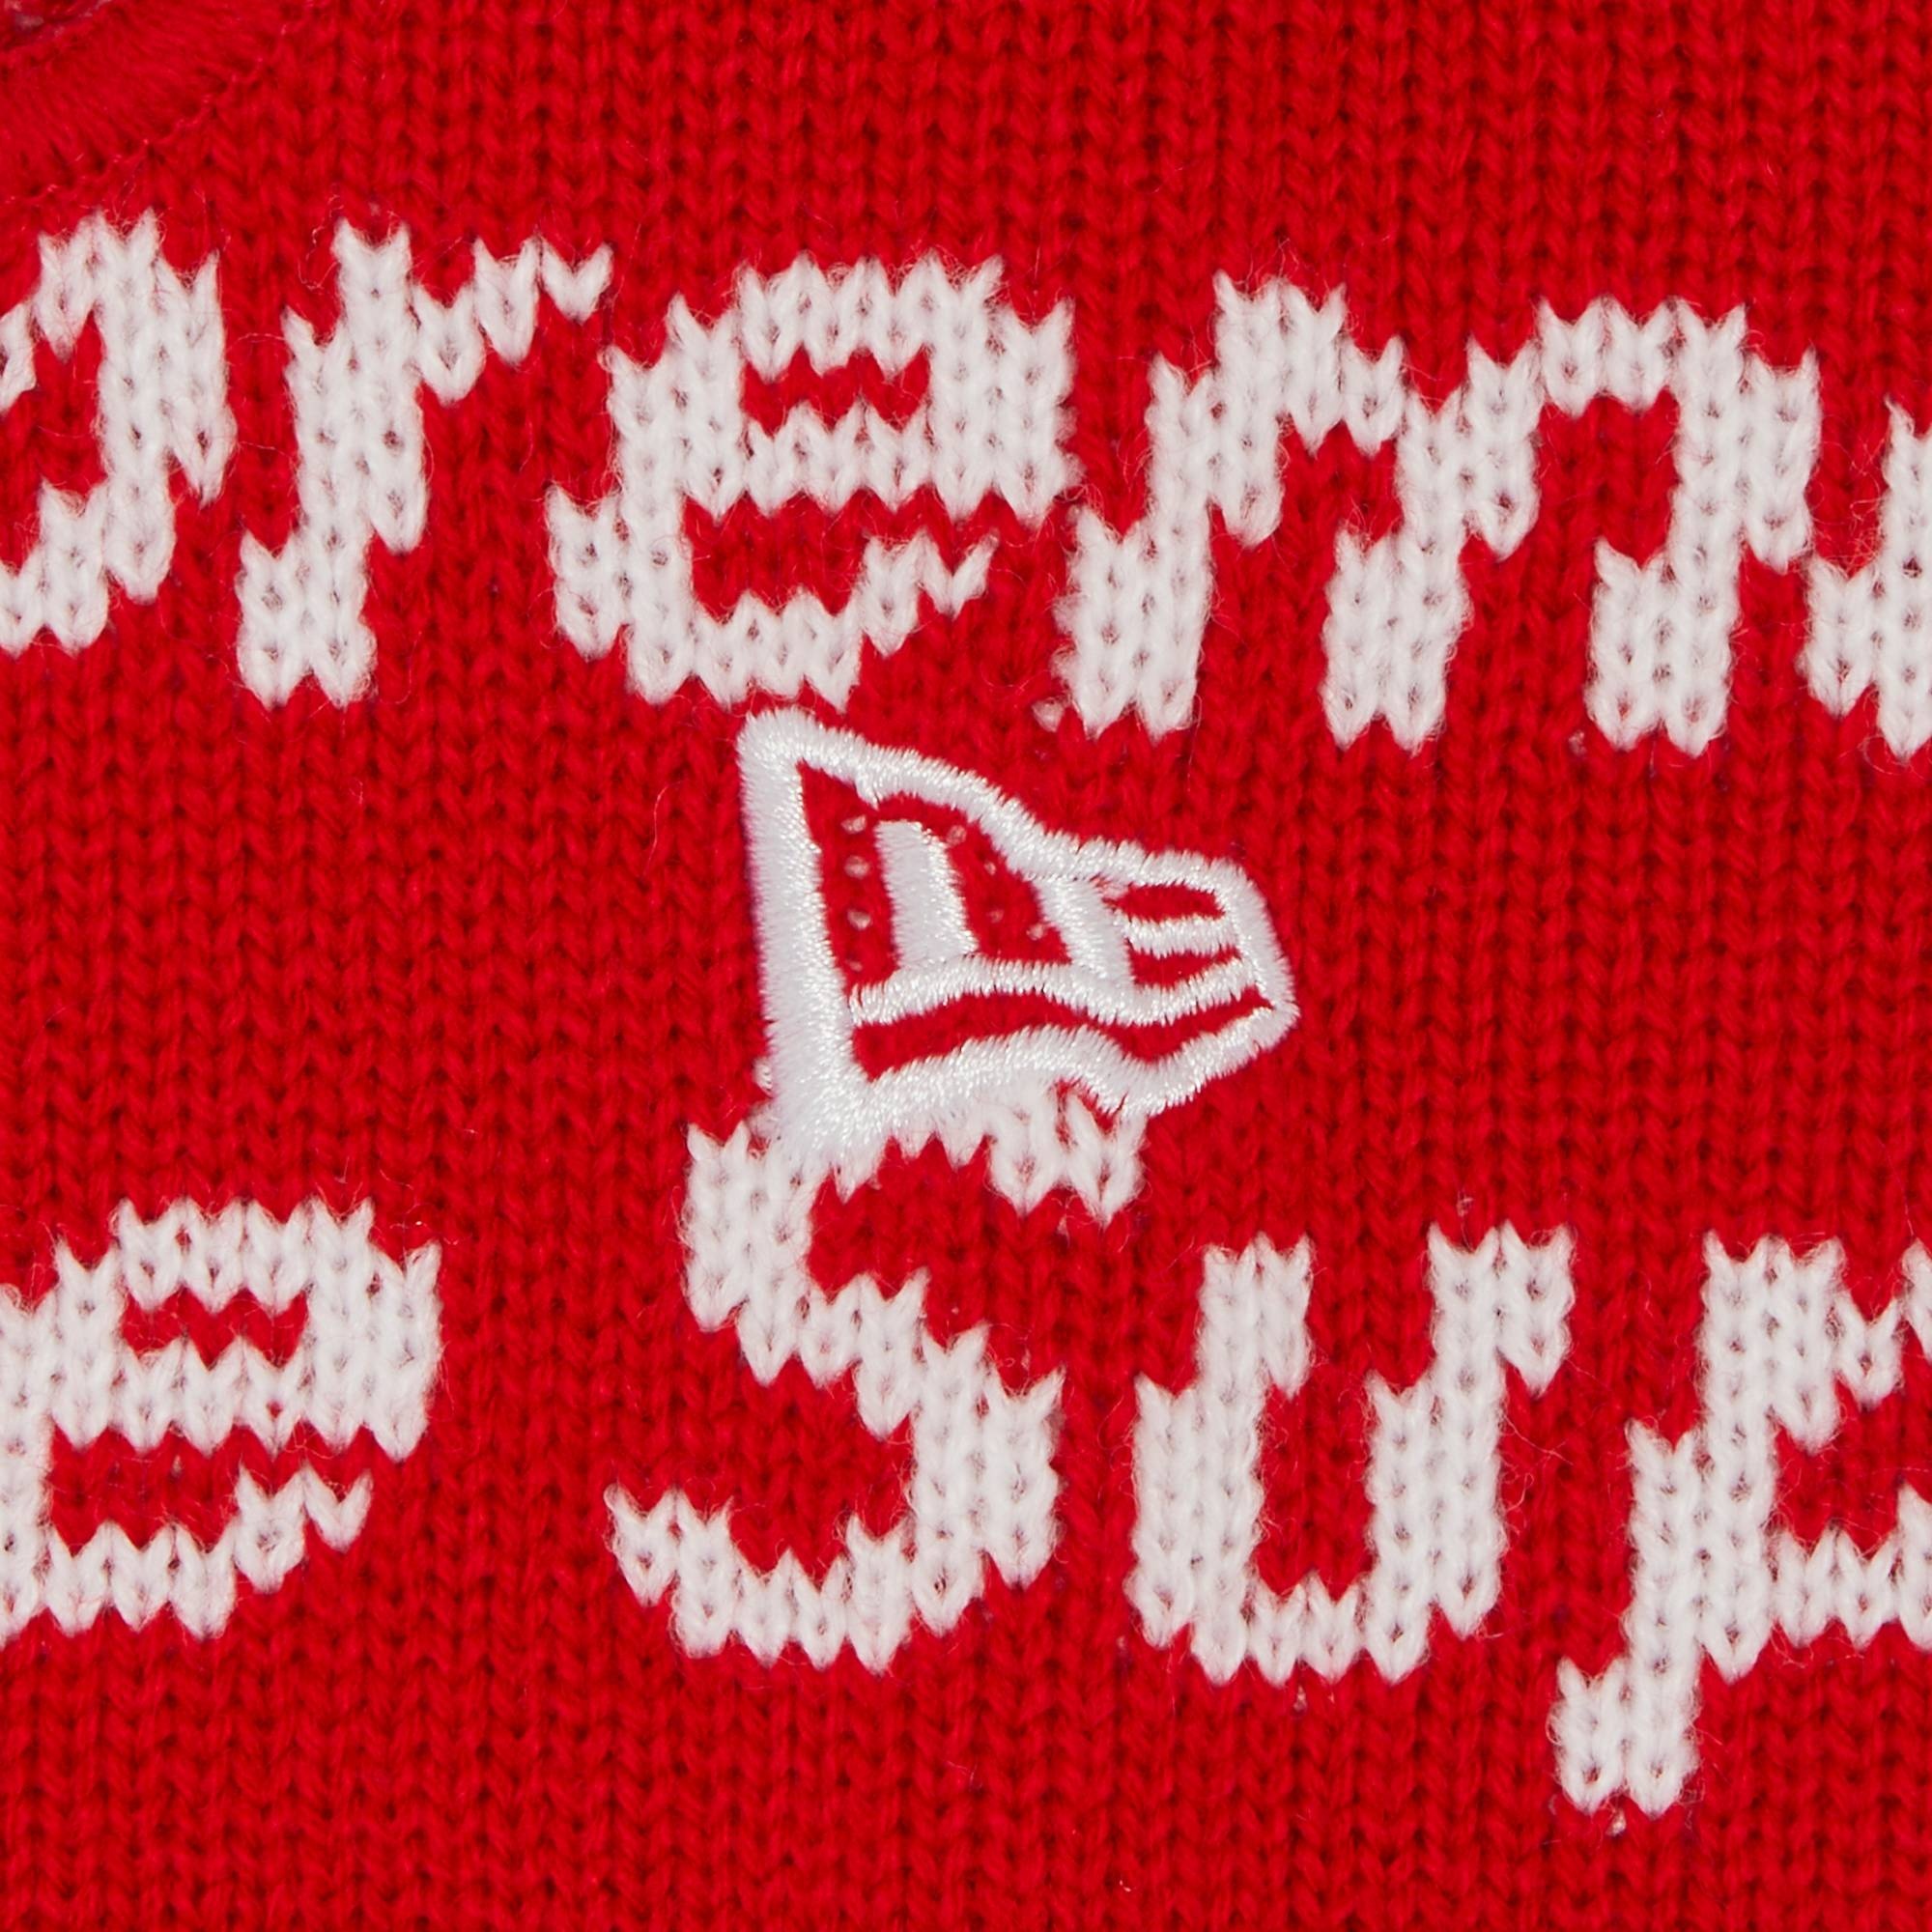 Supreme x New Era Repeat Balaclava 'Red' - 3